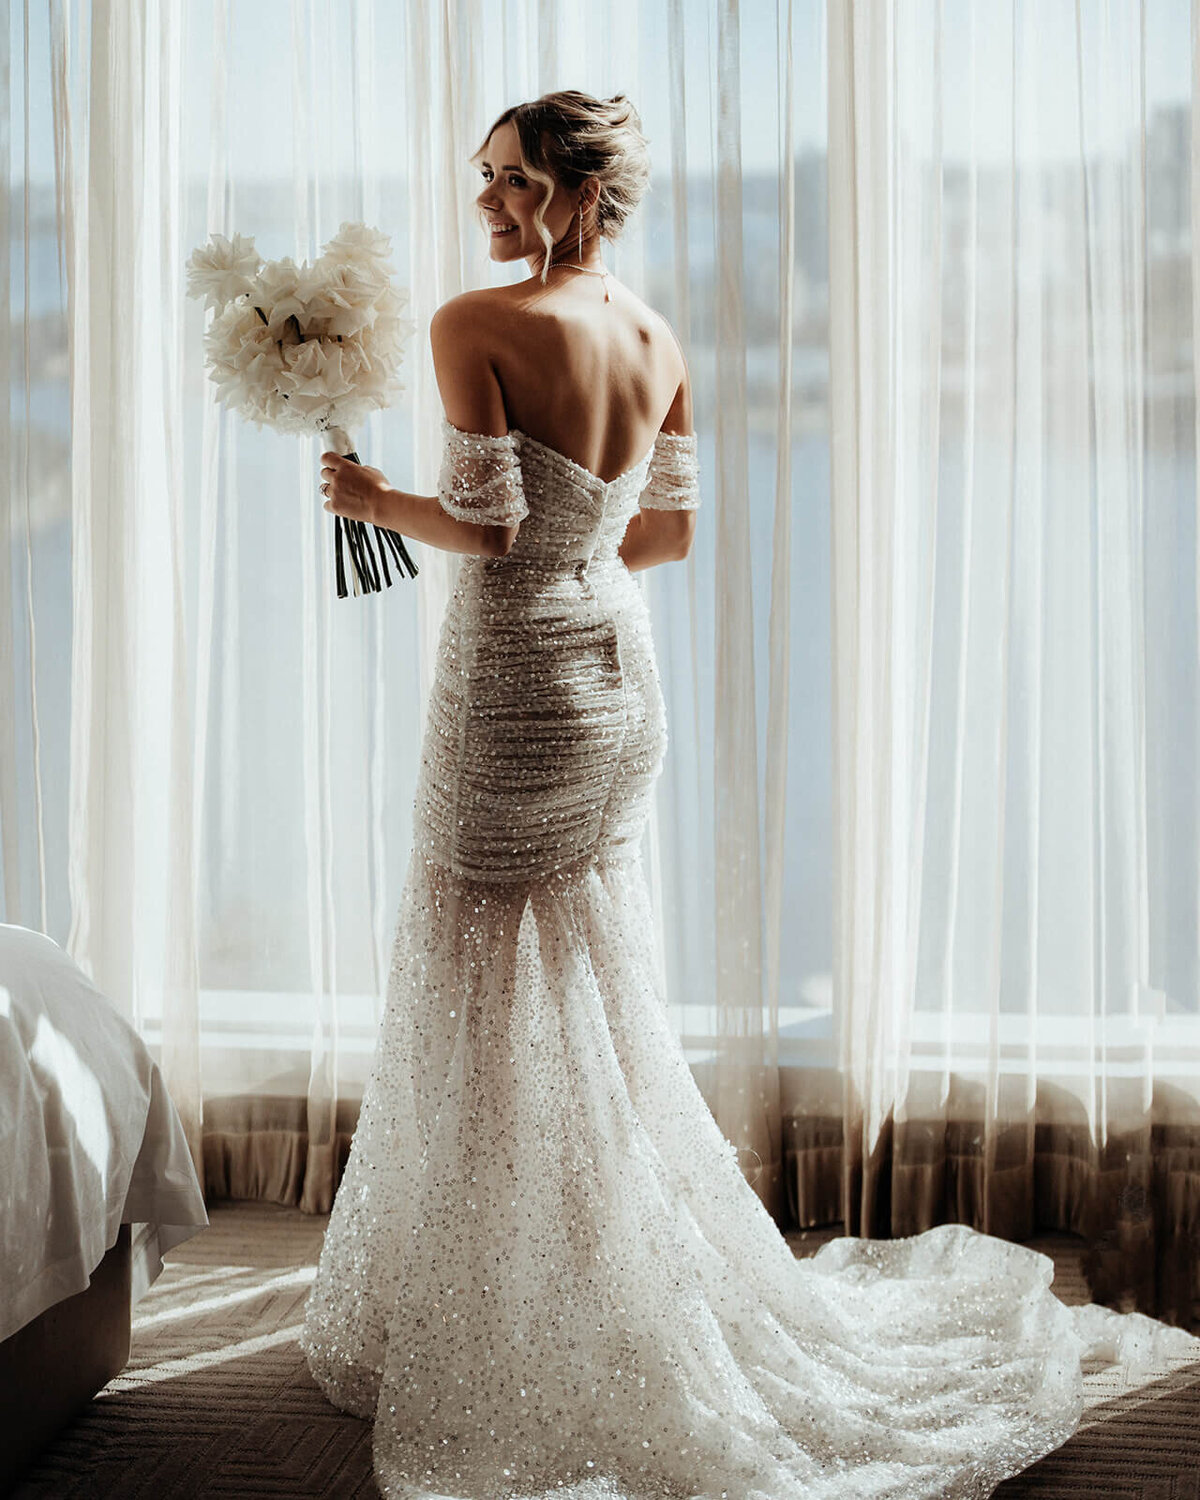 Bride in her wedding dress